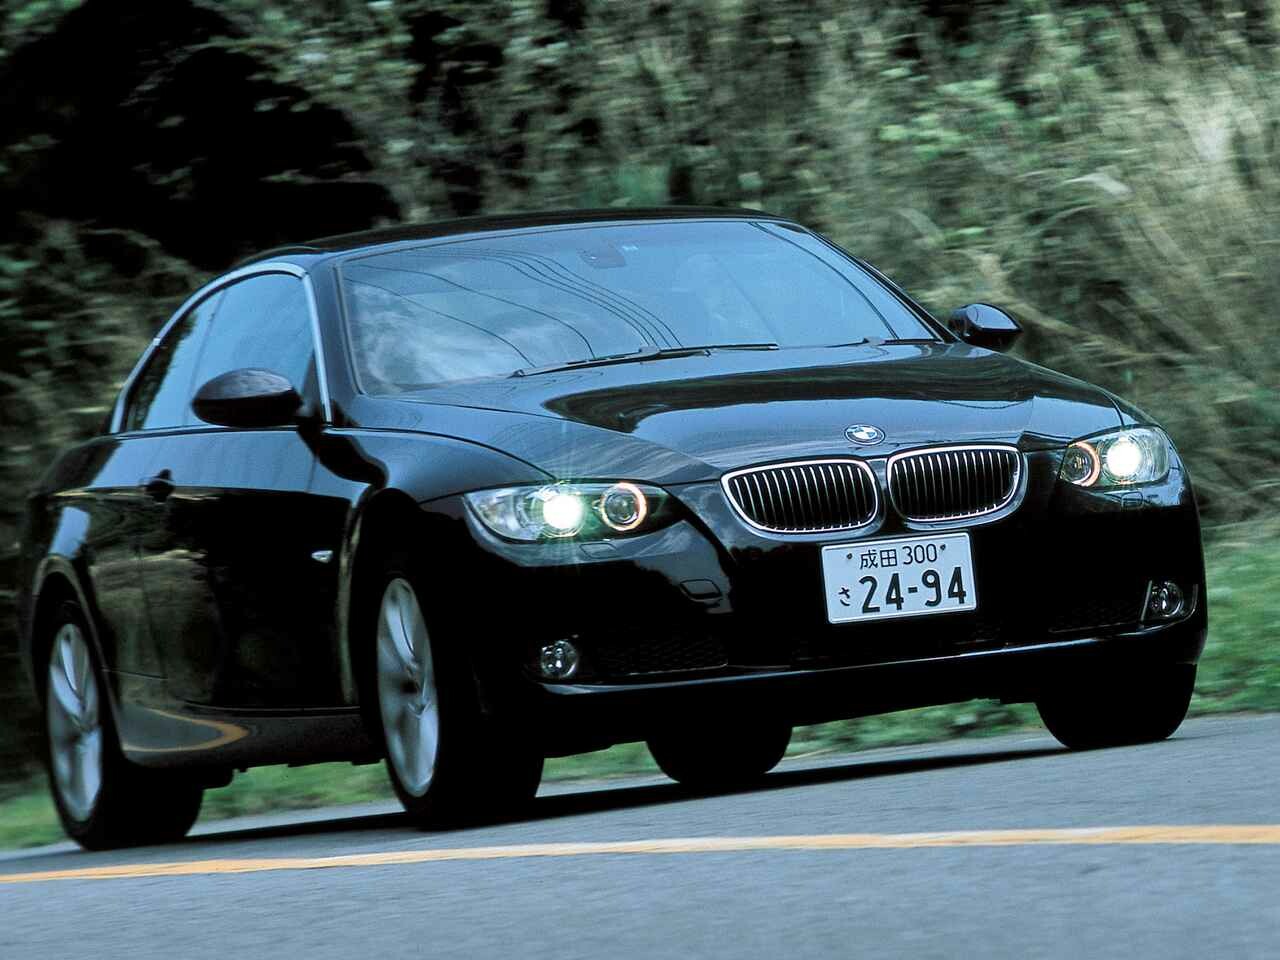 【ヒットの法則326】BMW 335iカブリオレはひとクラス上のV8モデルをライバルと想定していた